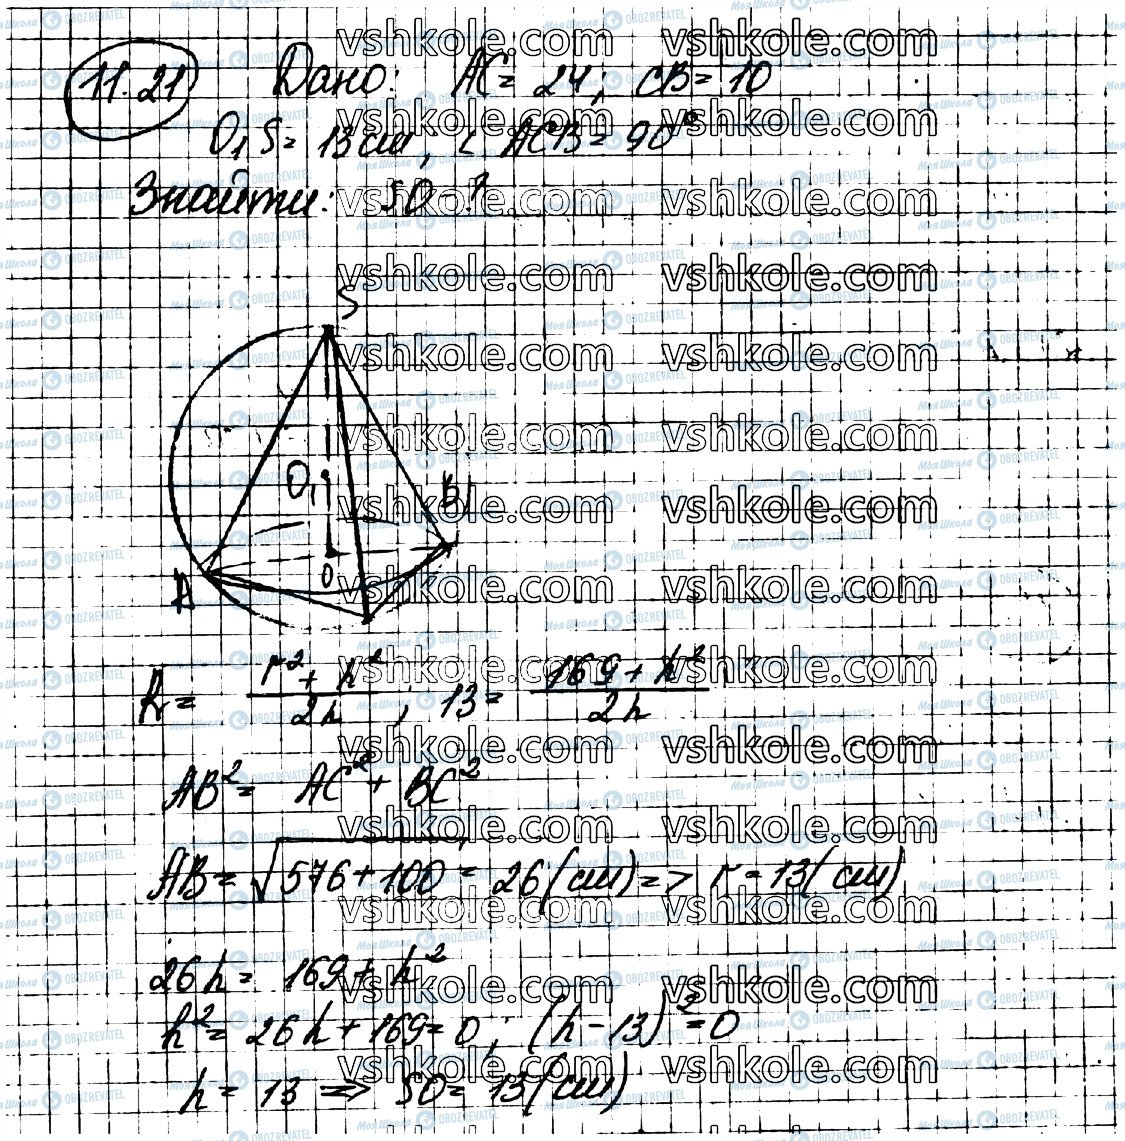 ГДЗ Геометрія 11 клас сторінка 21